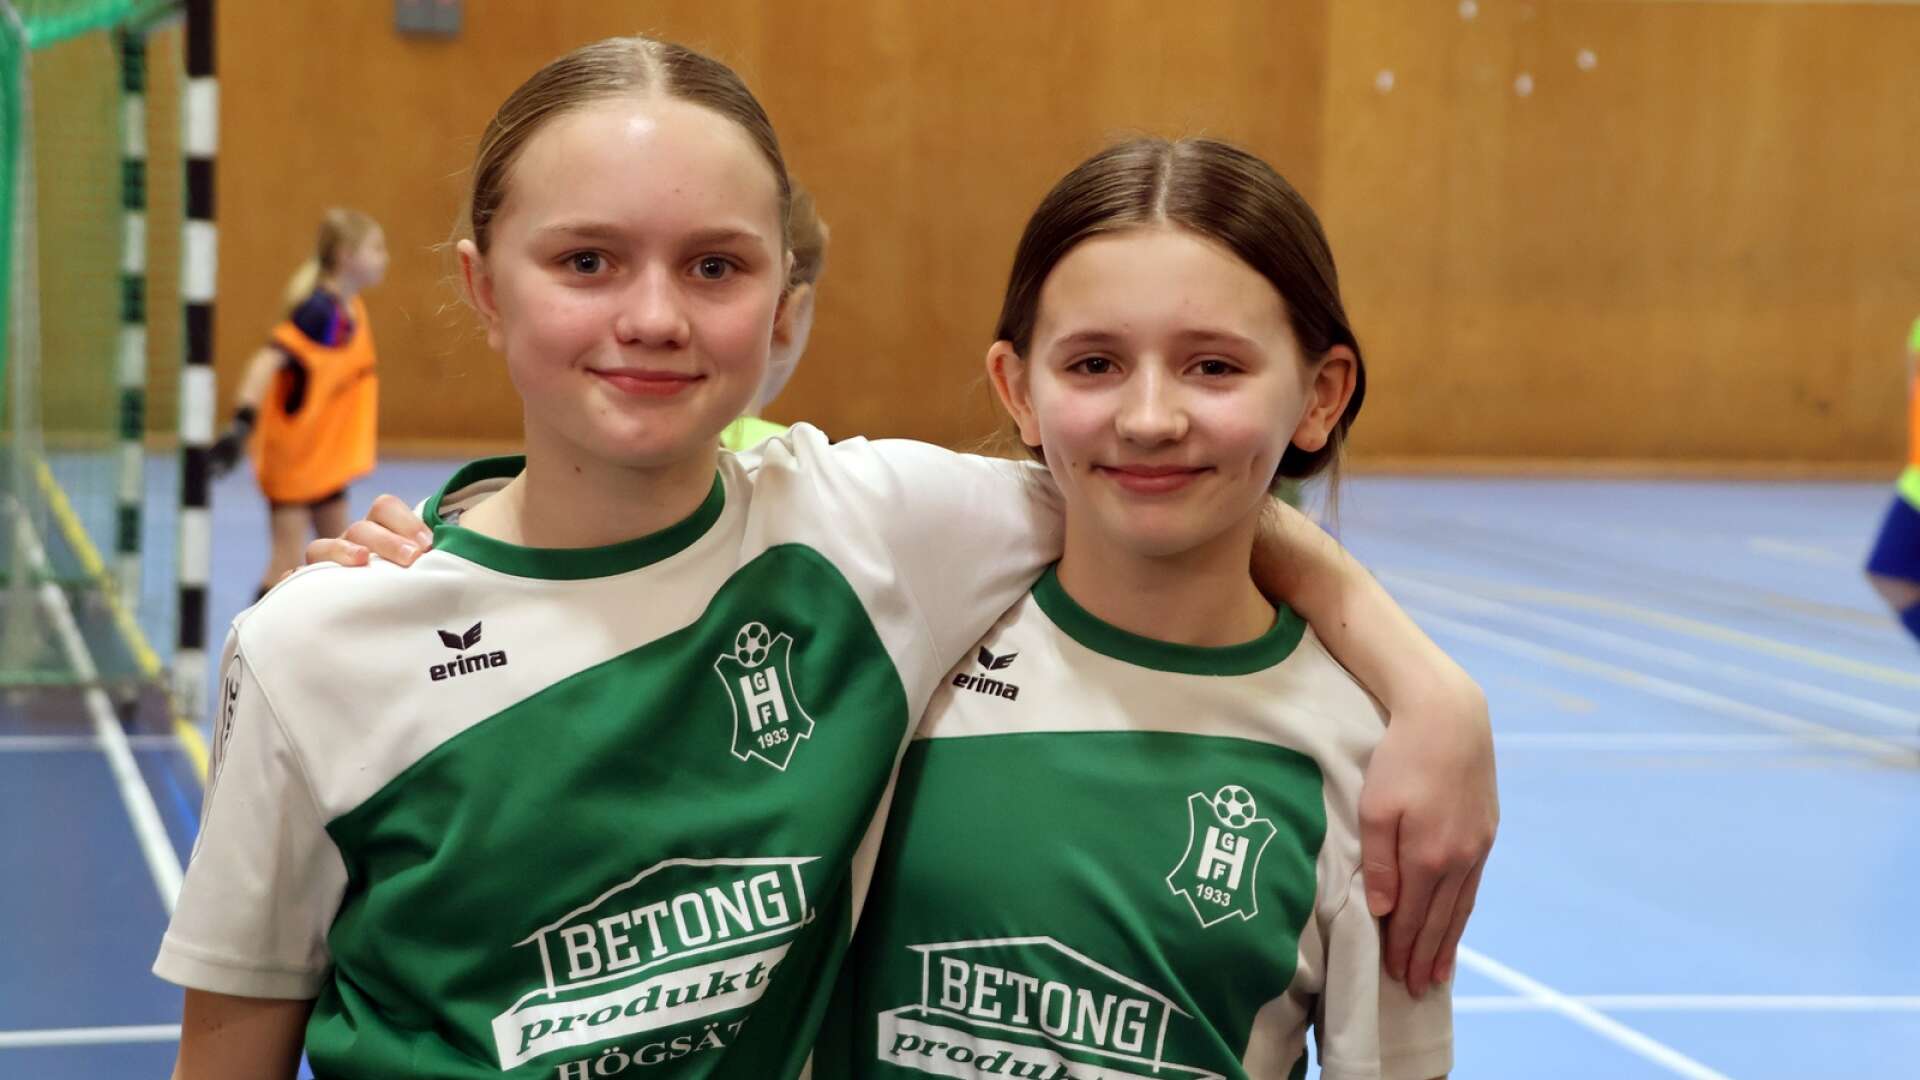 Sevärda matcher och mycket glädje • Astrid och Ebba, 13: ”Kul att de arrangerar det här”